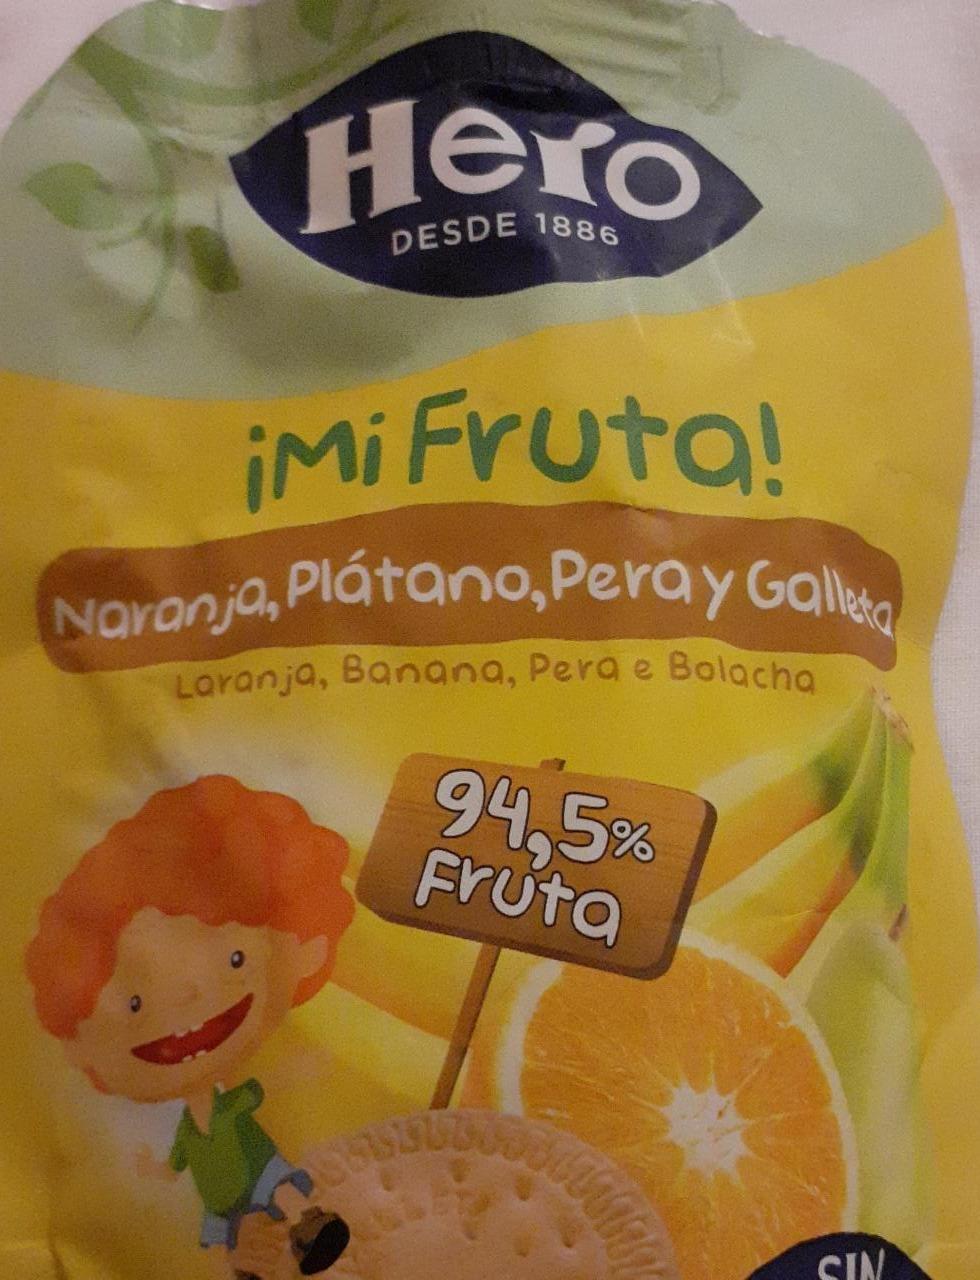 Fotografie - ¡Mi Fruta! Naranja Plátano Pera y Galleta Hero